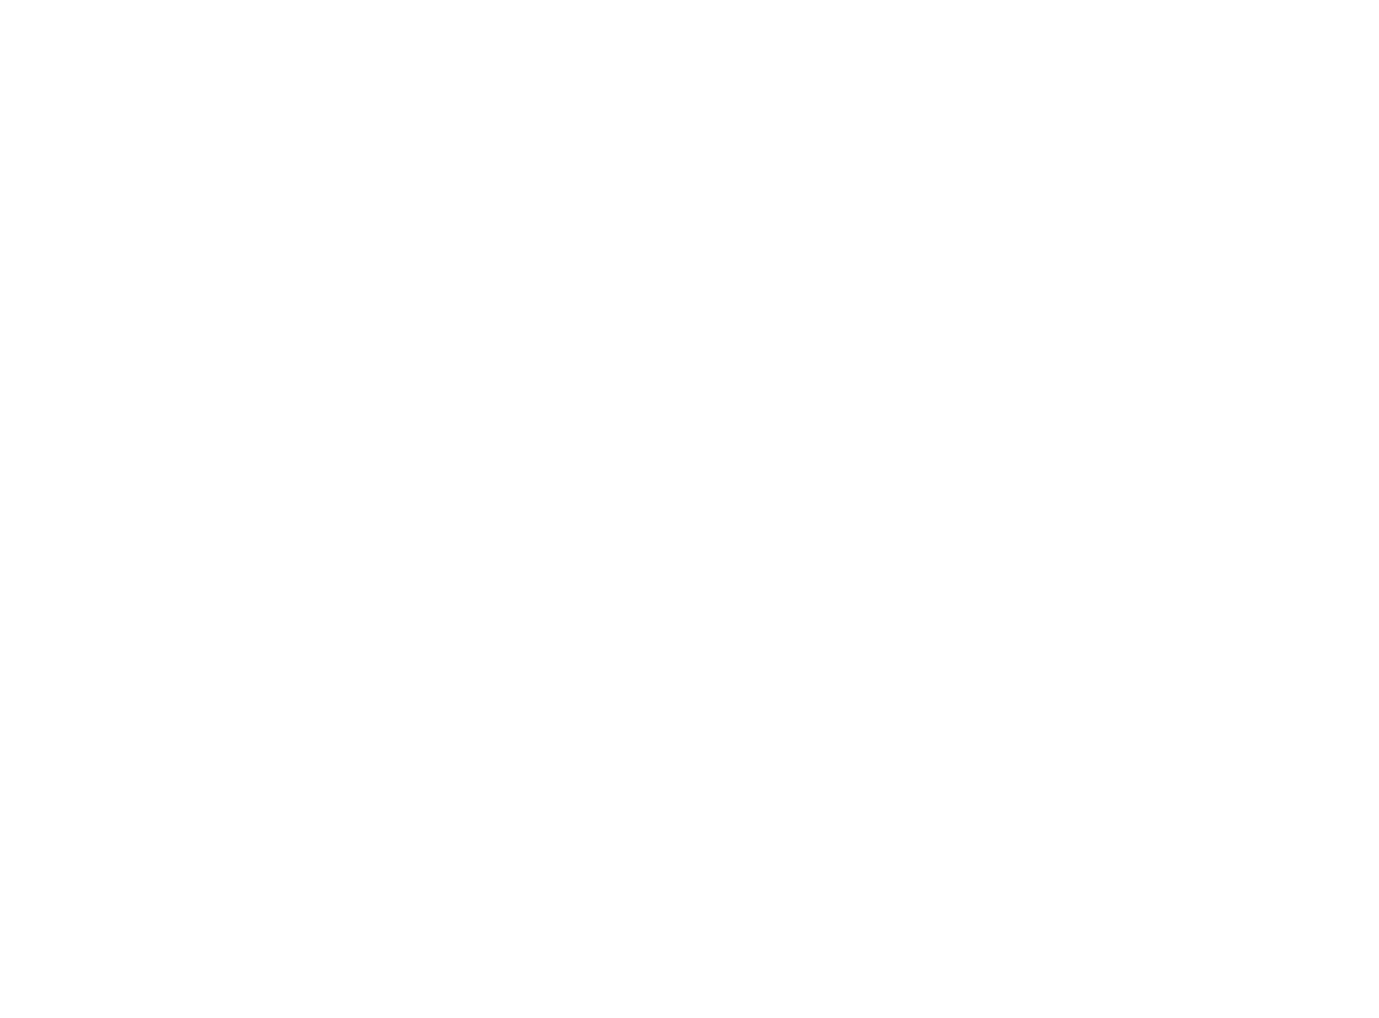 FHI 360 Logo